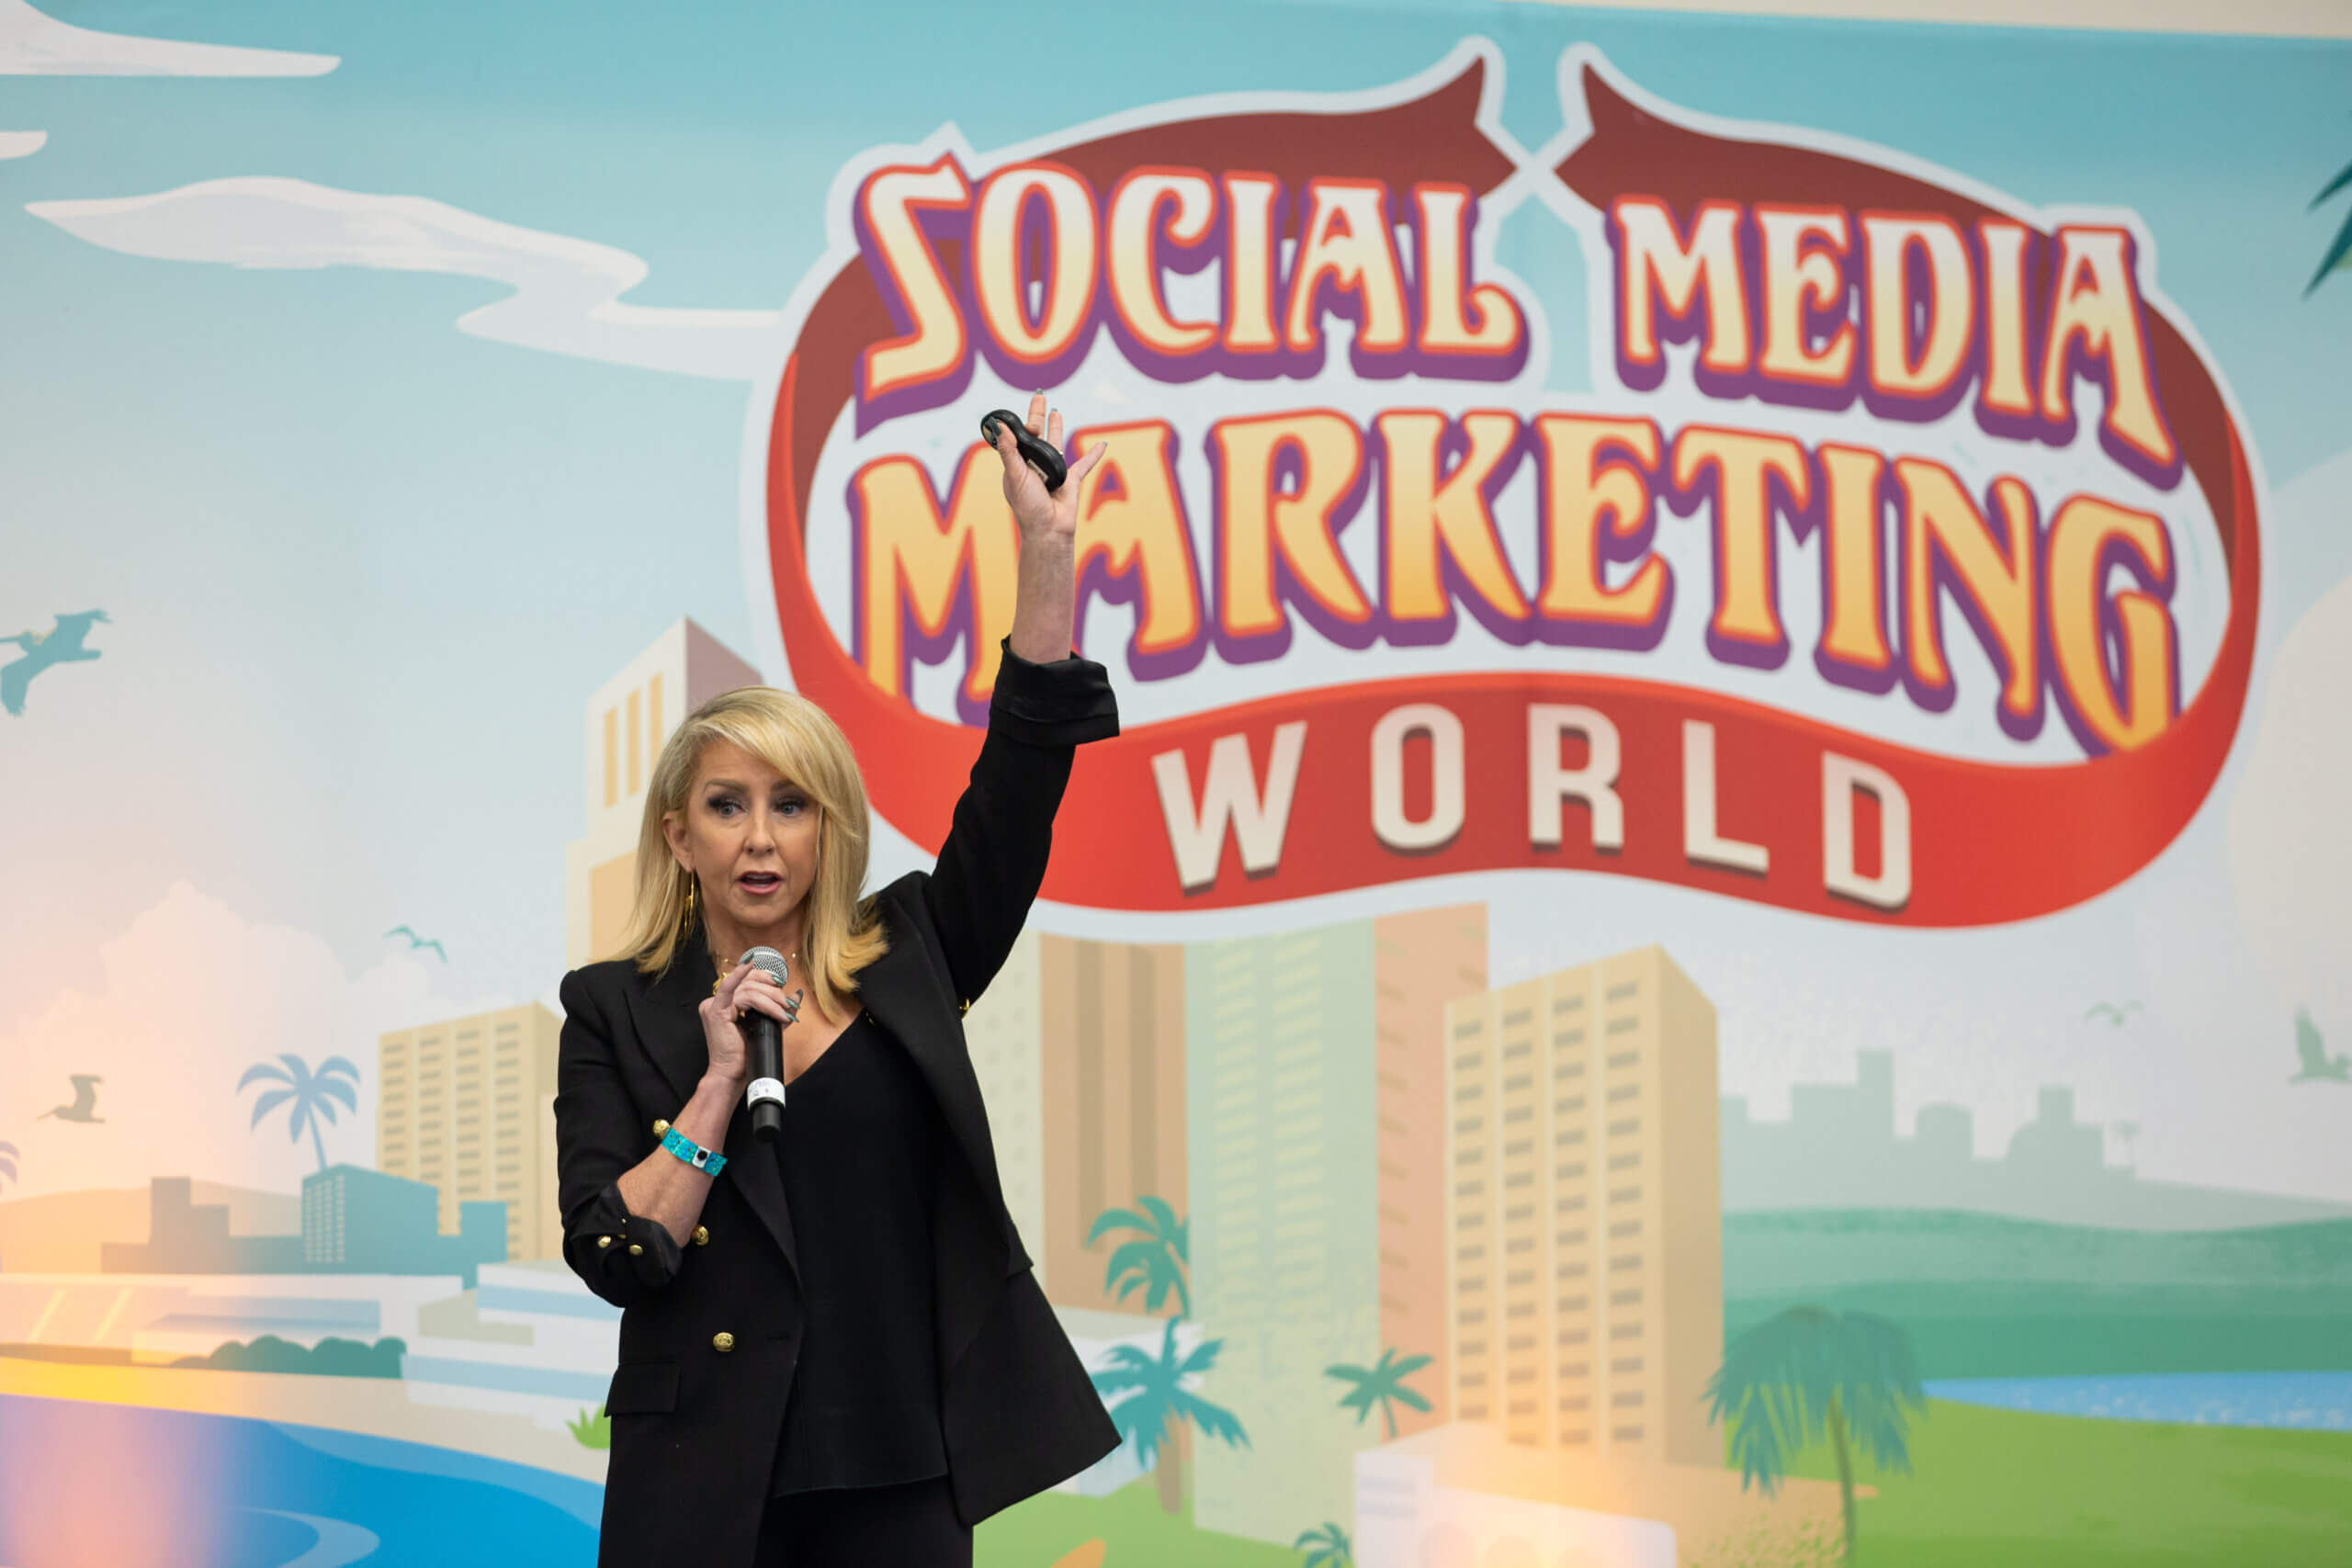 Social Media Marketing wereld